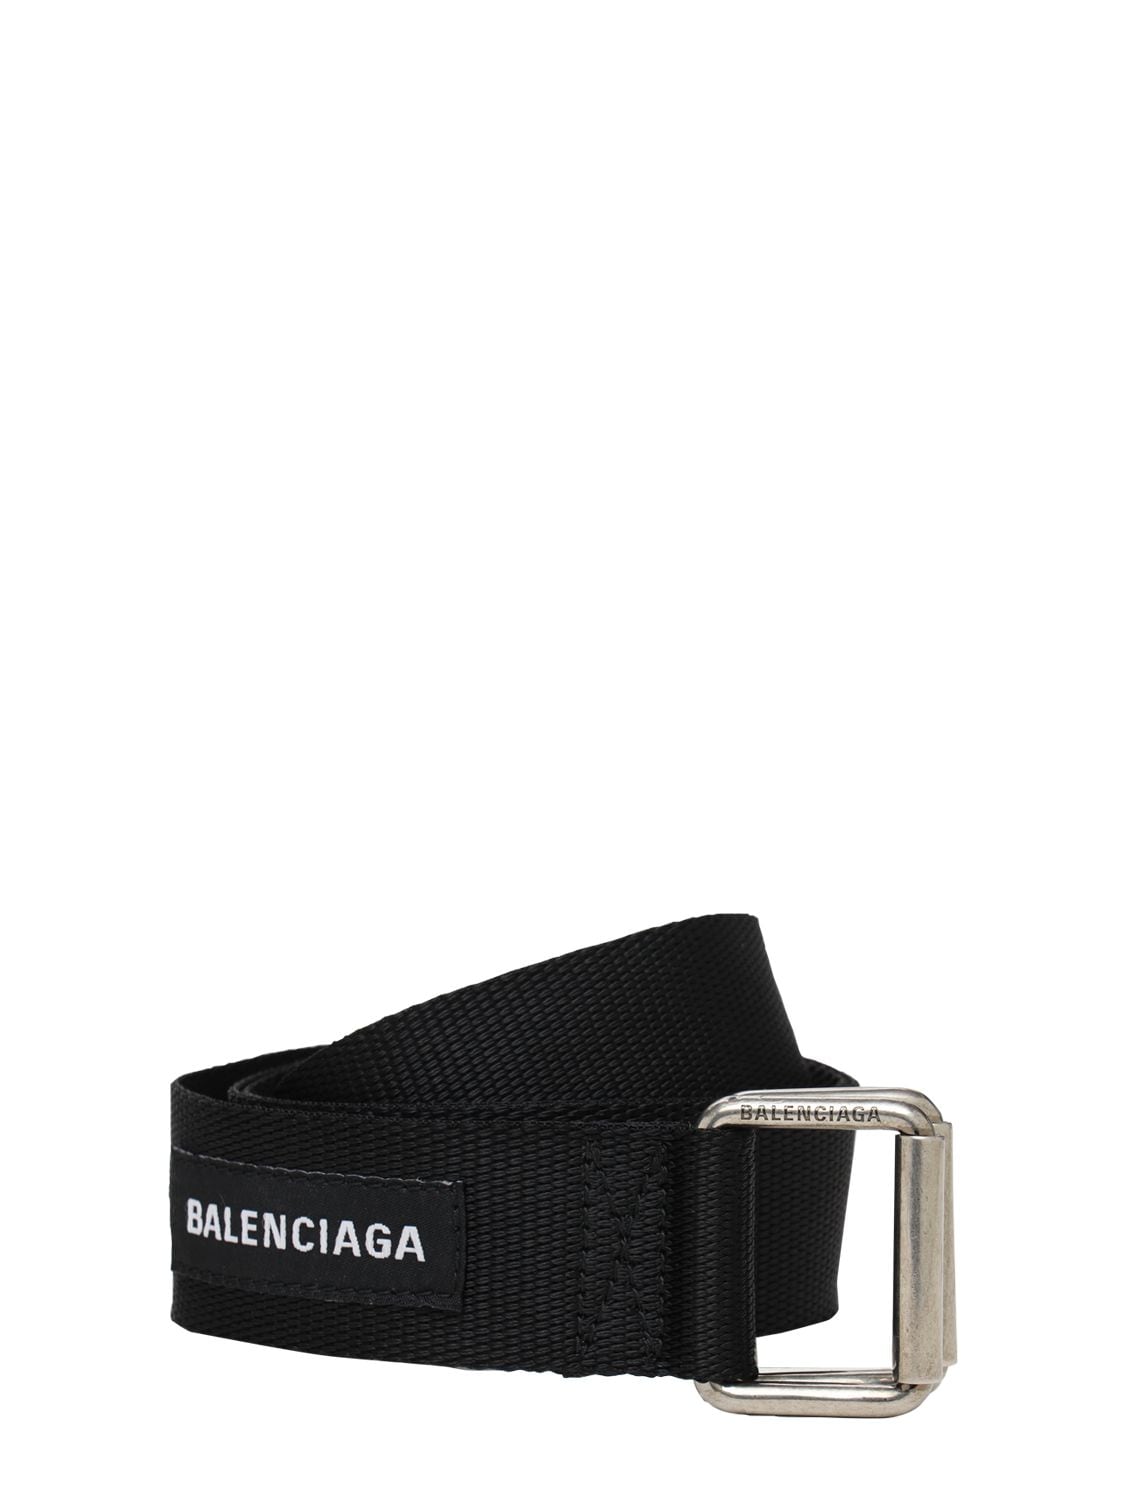 BALENCIAGA 3.5厘米LOGO尼龙腰带,73IOFX014-MTAWMA2